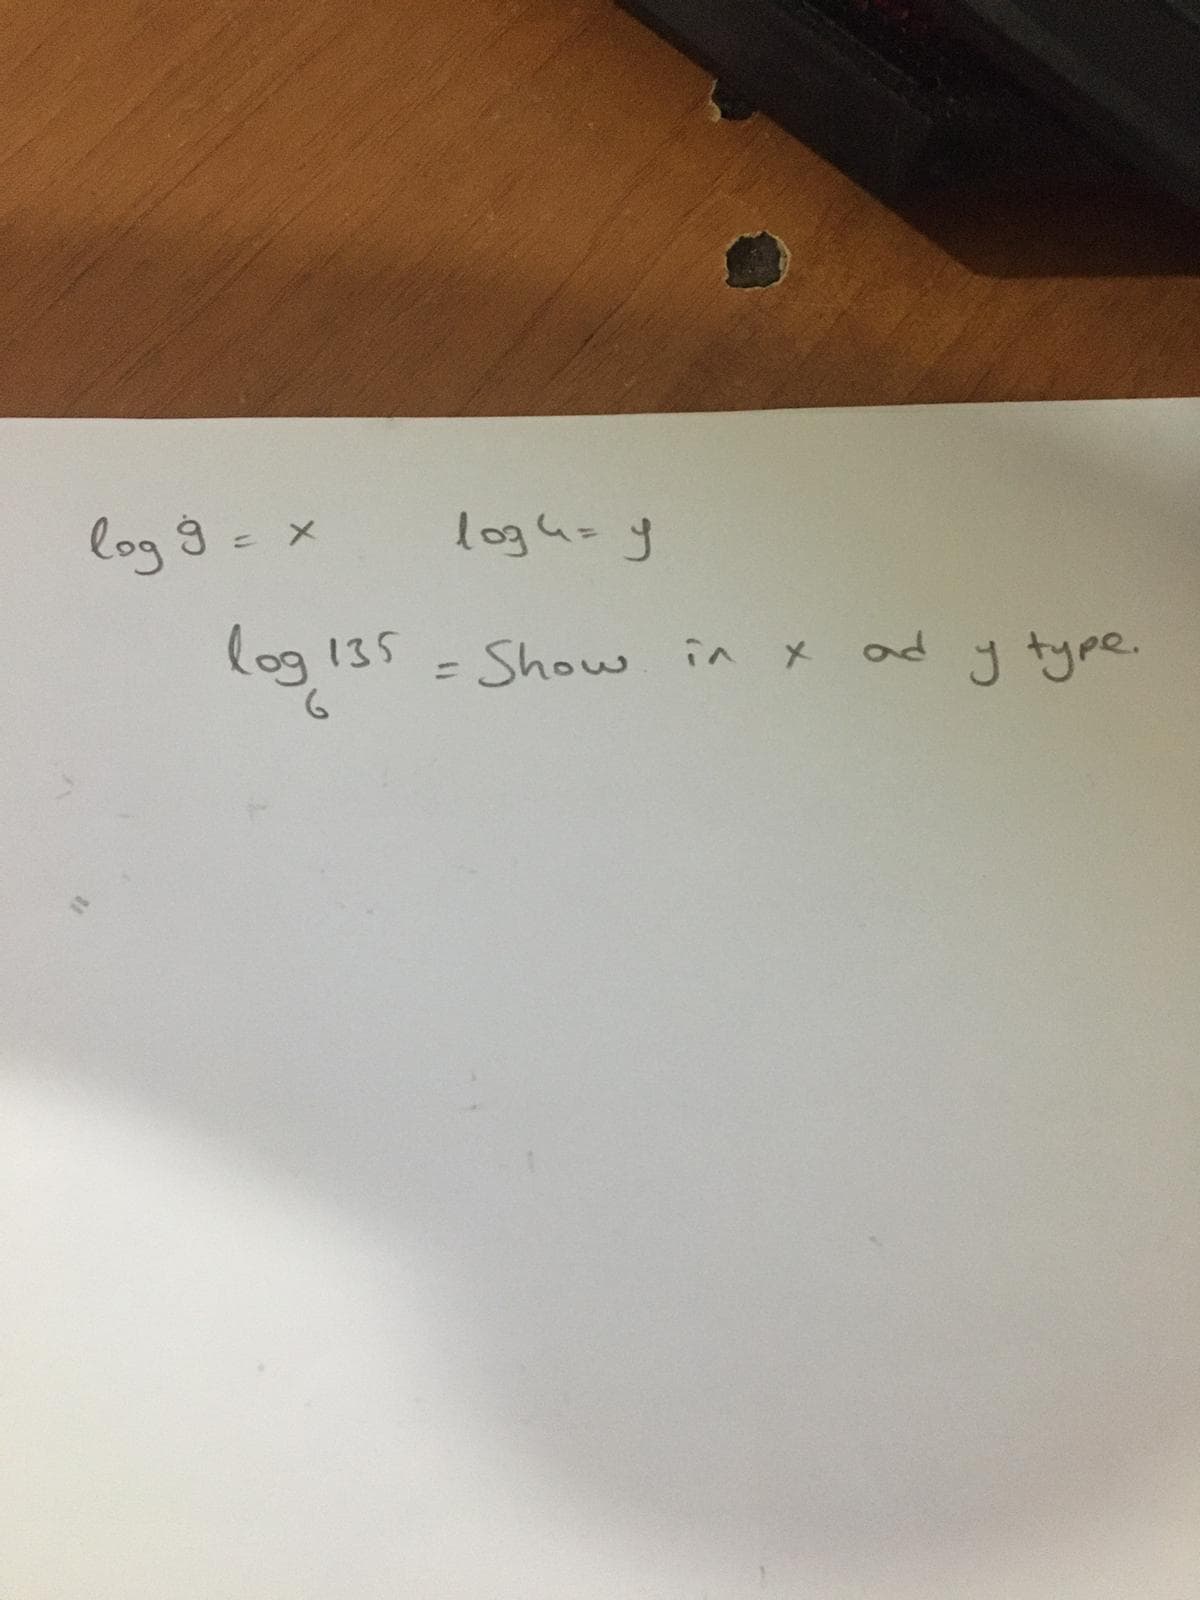 log 9 = x
logus y
log 135 - Show in x
ad y type.
